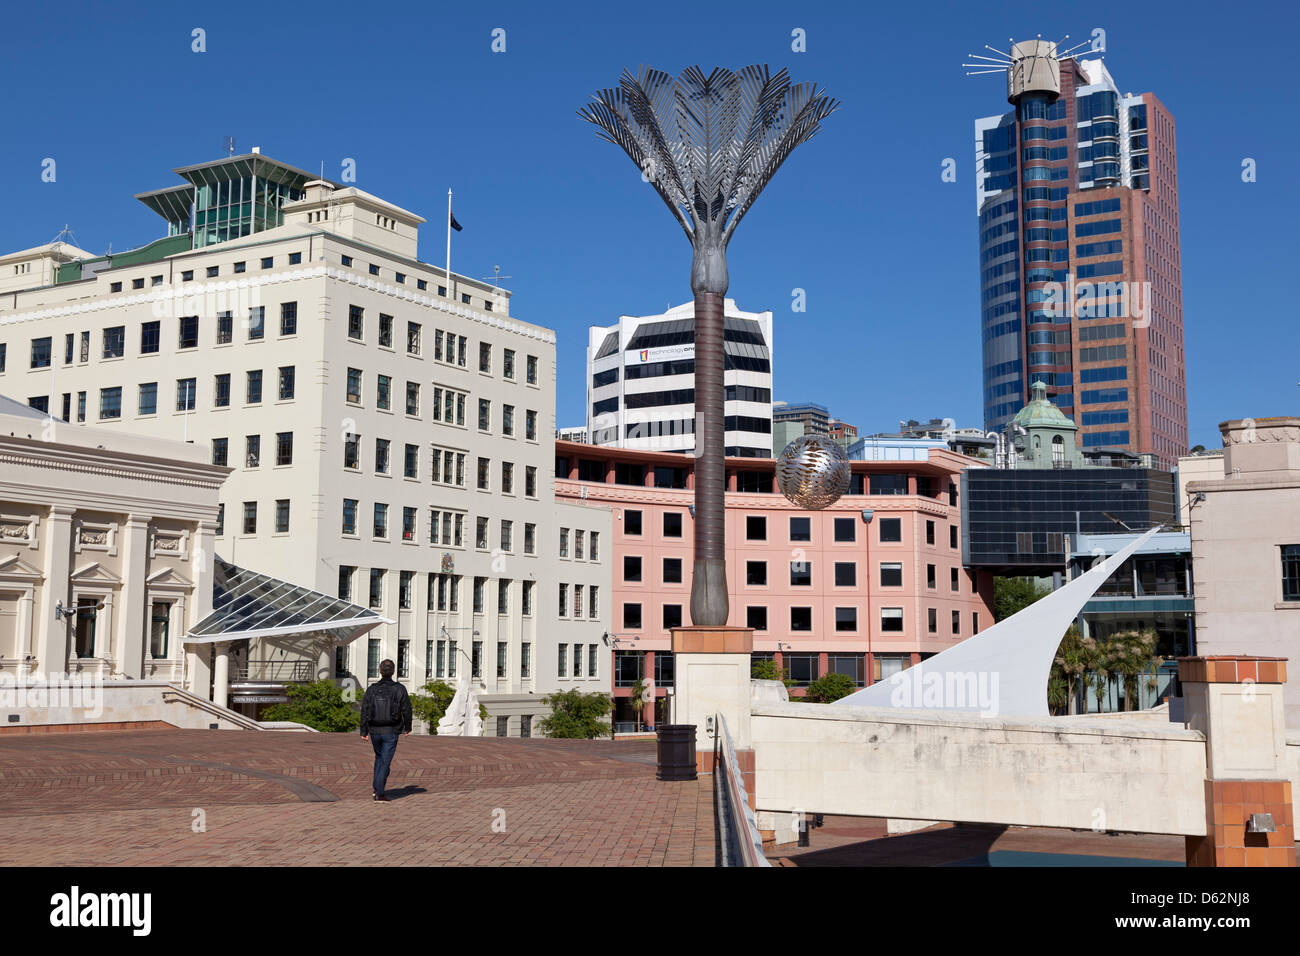 La Plaza de la ciudad con el helecho escultura por Neil Dawson ,de Wellington, Nueva Zelanda Foto de stock